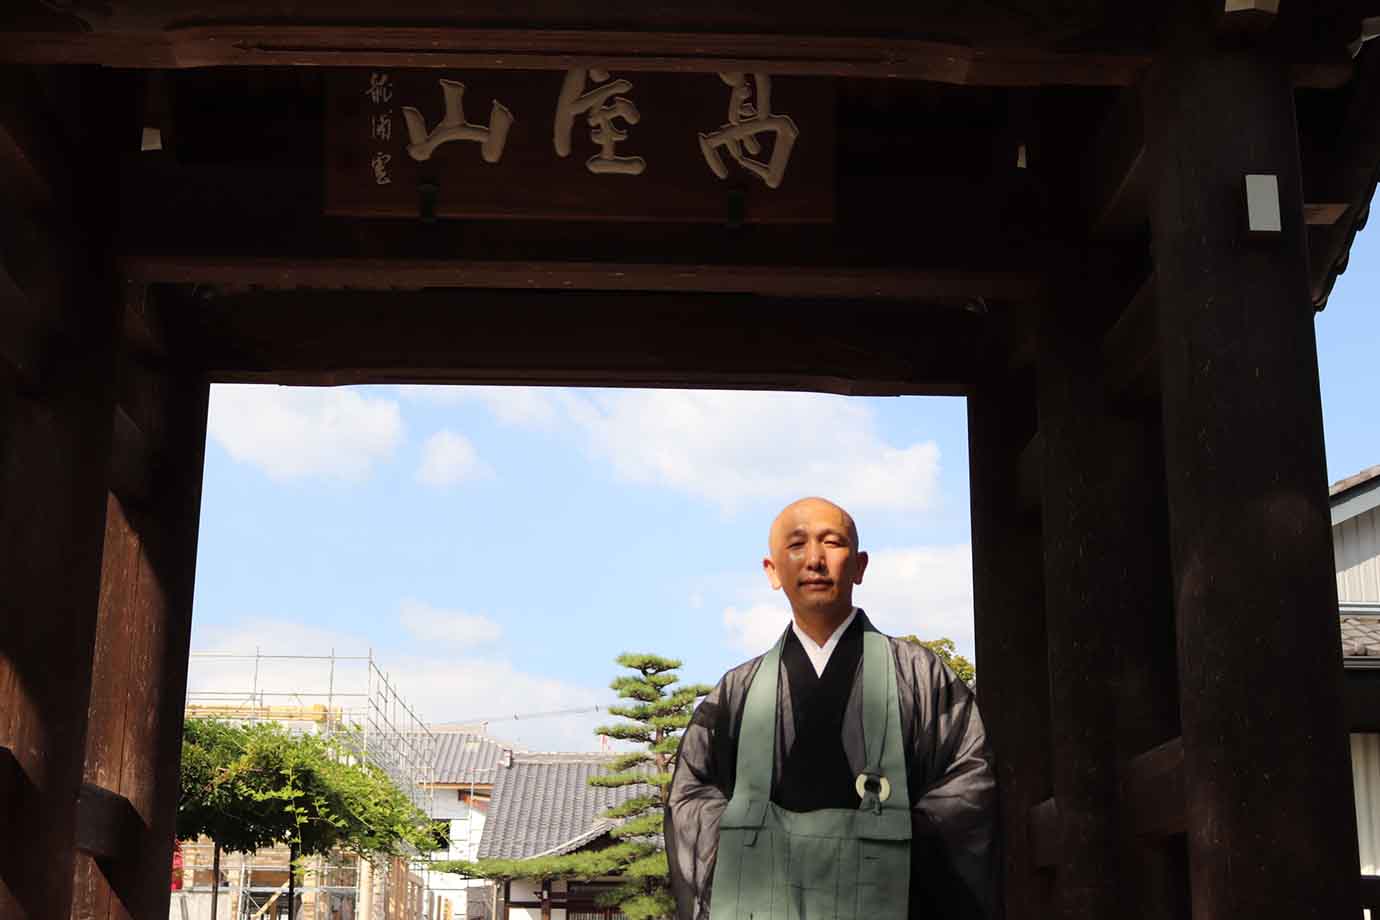 中村さんが副住職を勤める永正寺（高屋山永正寺・こうおくさんえいしょうじ）は1504年に開創された、臨済宗妙心寺派の寺院です。